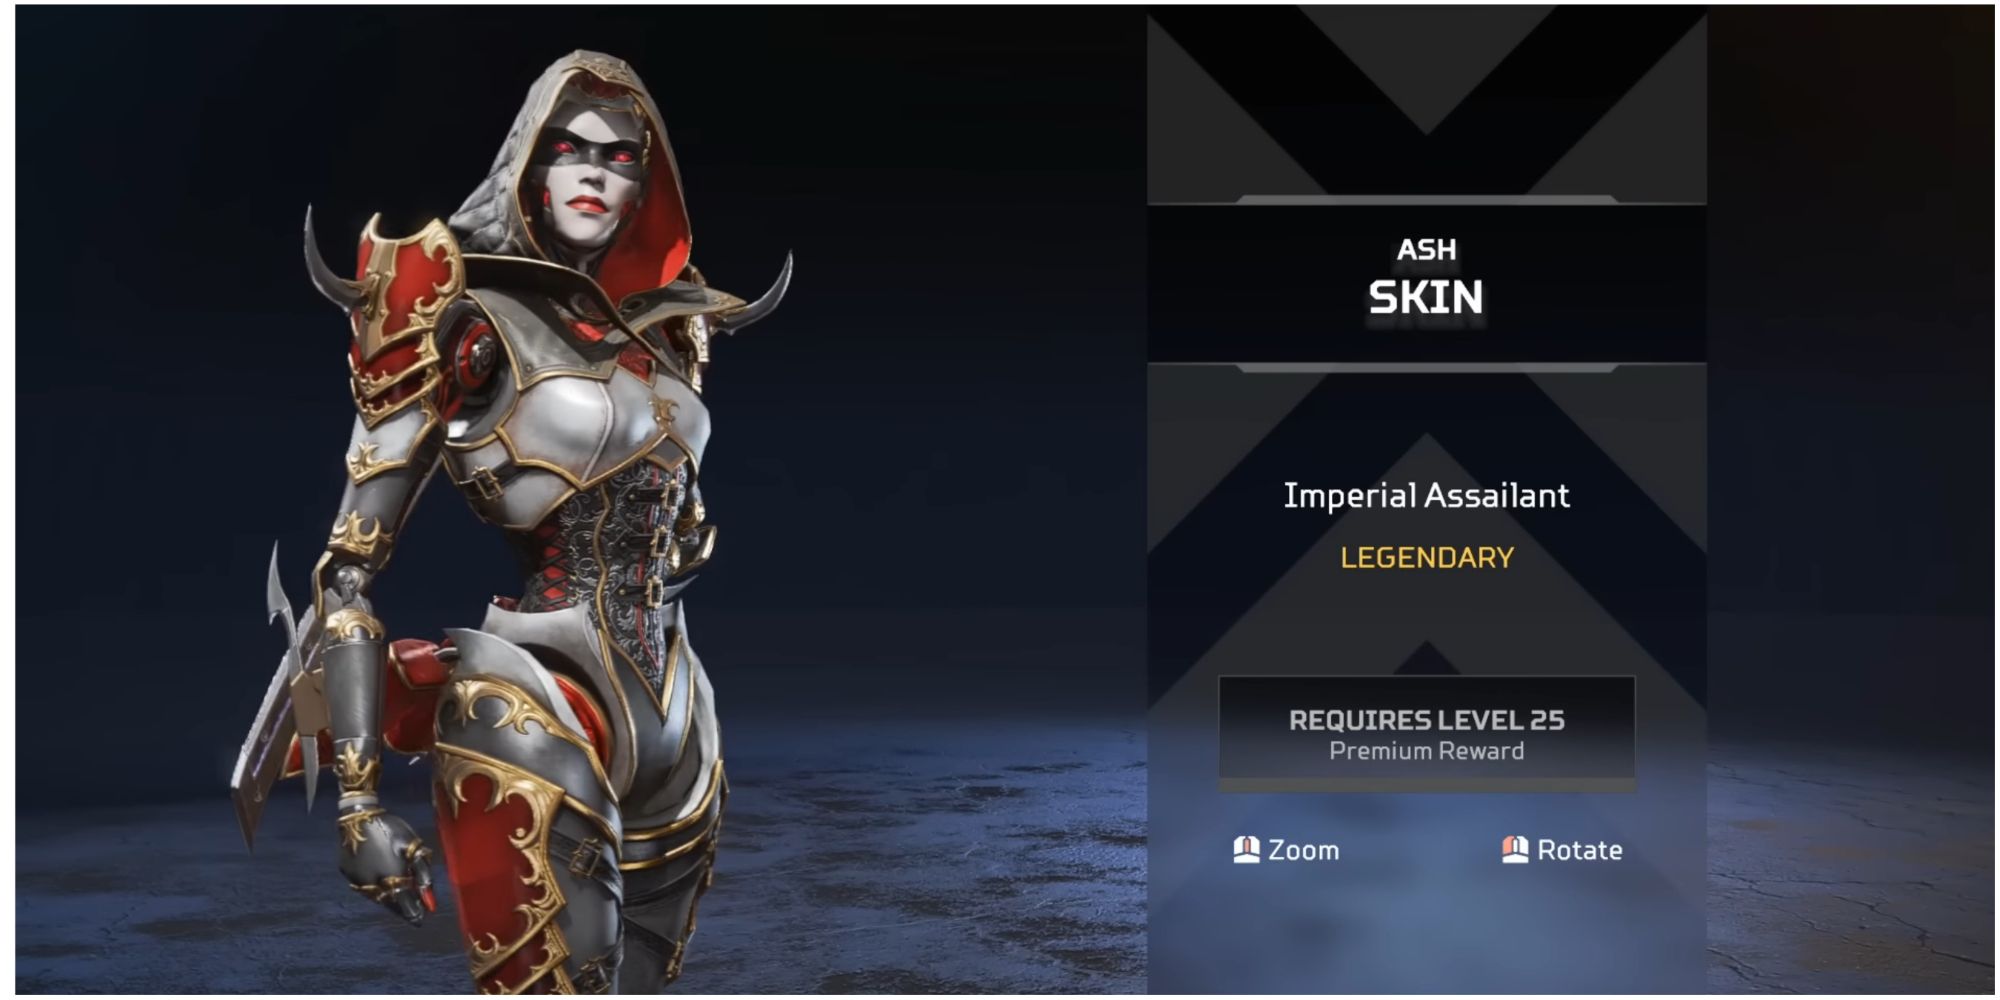 Ash Skin In Apex Legends